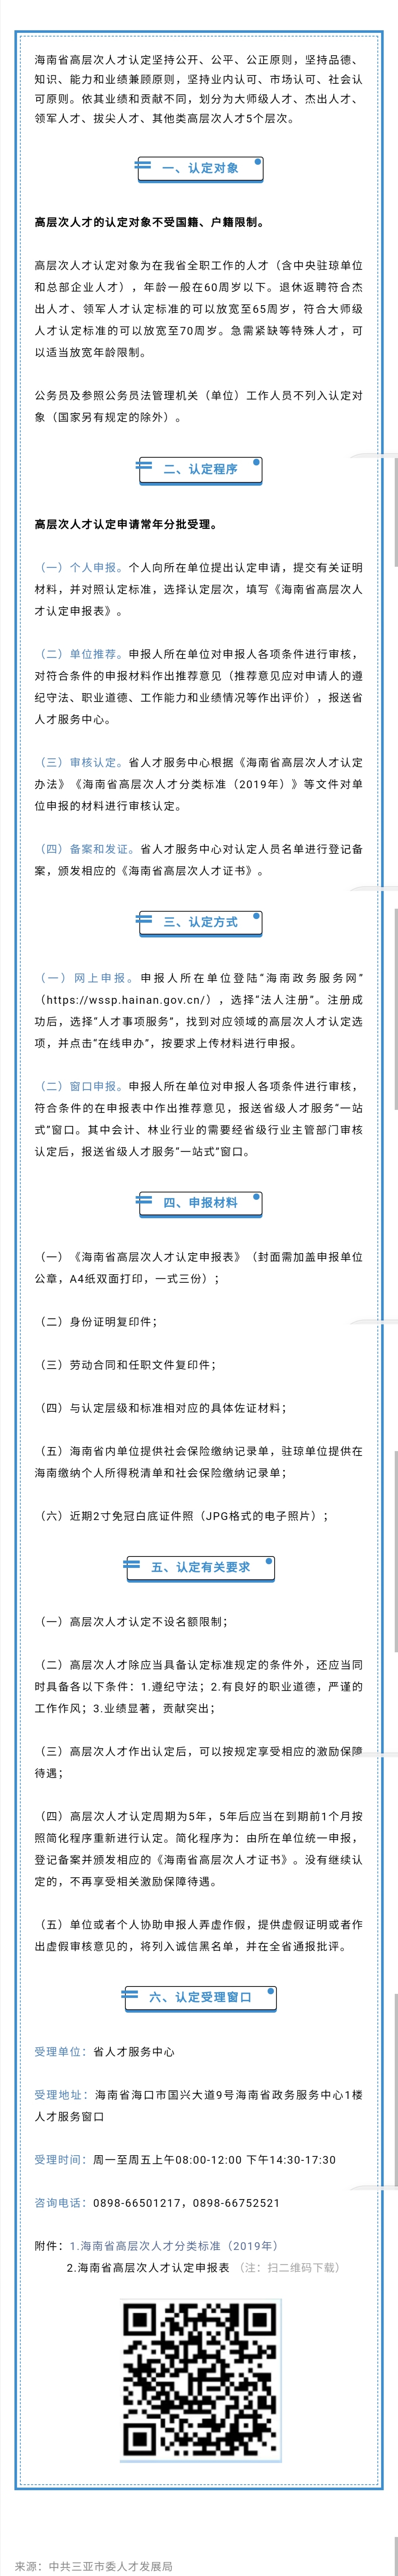 2020-7-6海南省高层次人才认定流程来了【三亚发布微信】